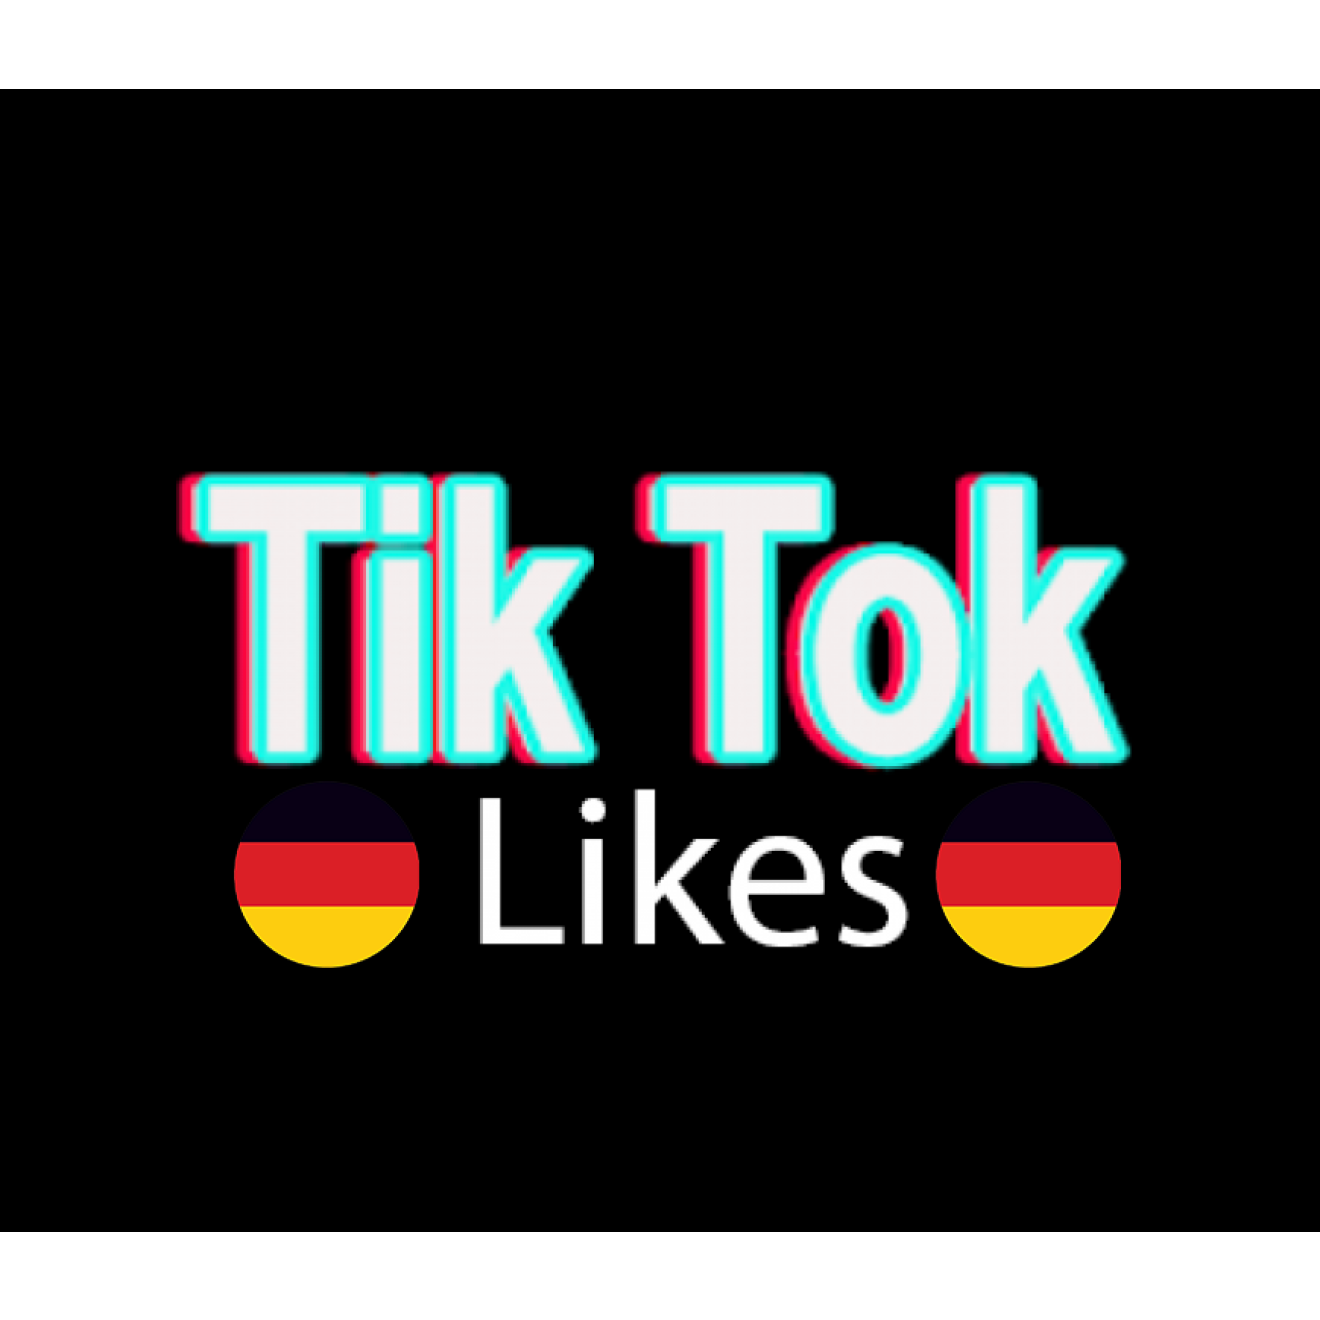 75 Deutsche TikTok Post Likes / Gefällt mir Angaben für Dich